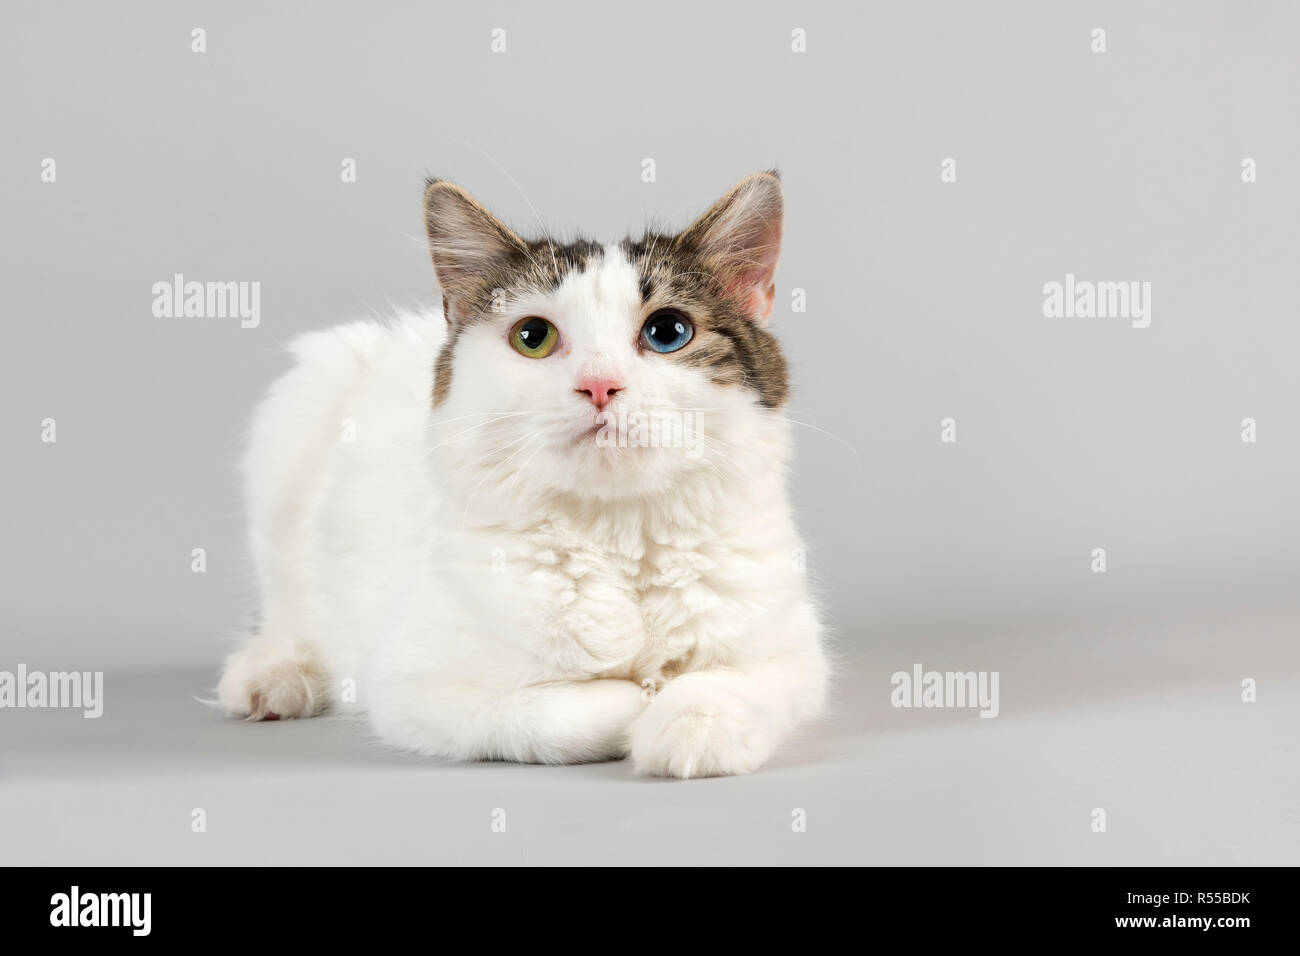 Cymric manx cat 15765 Banque D'Images